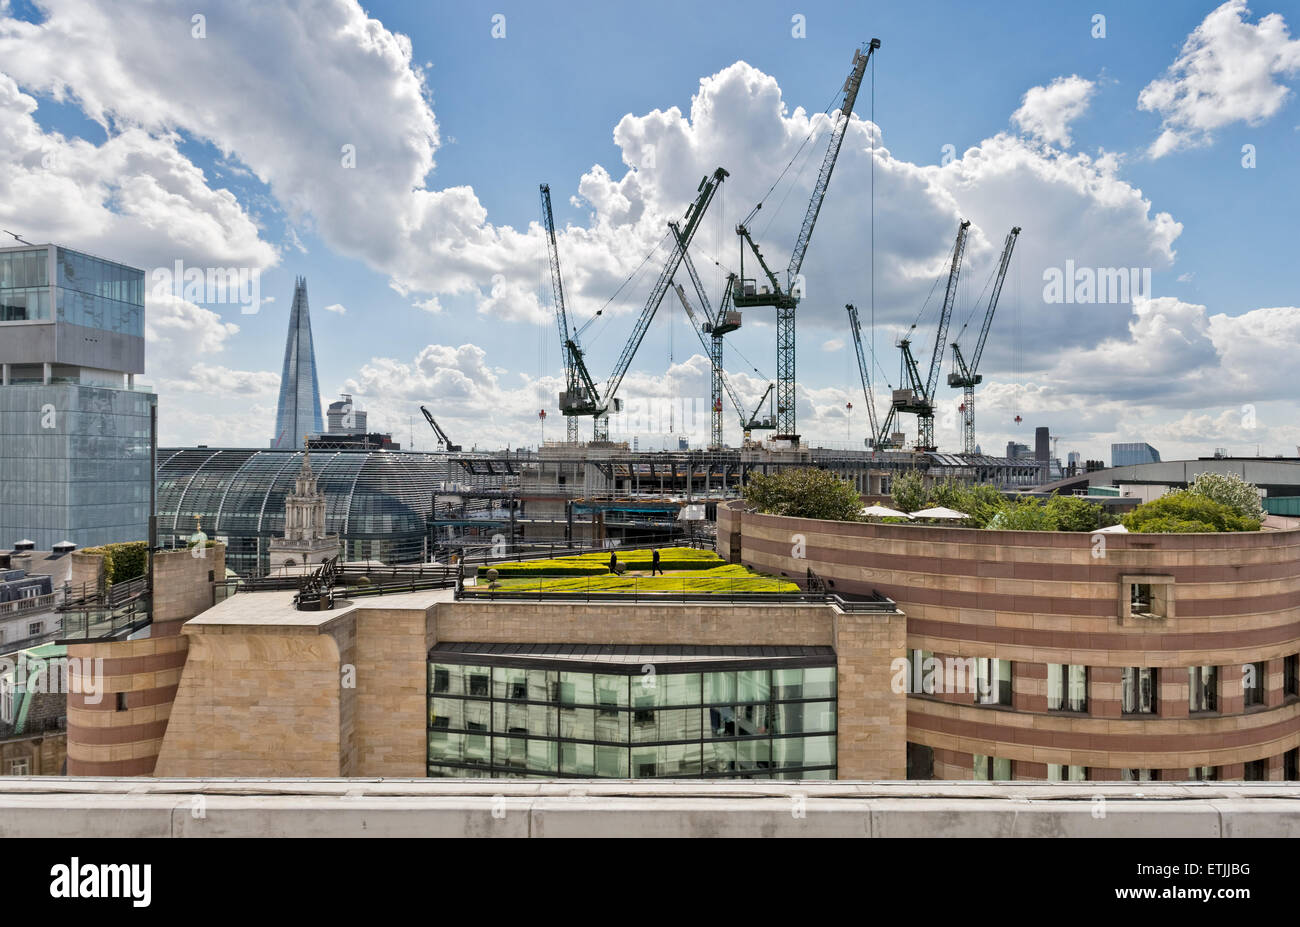 Der Londoner Skyline Blick auf dem Dachgarten des Hotels auf Platz eins Geflügel mit Baustelle und die Scherbe im Hintergrund Stockfoto